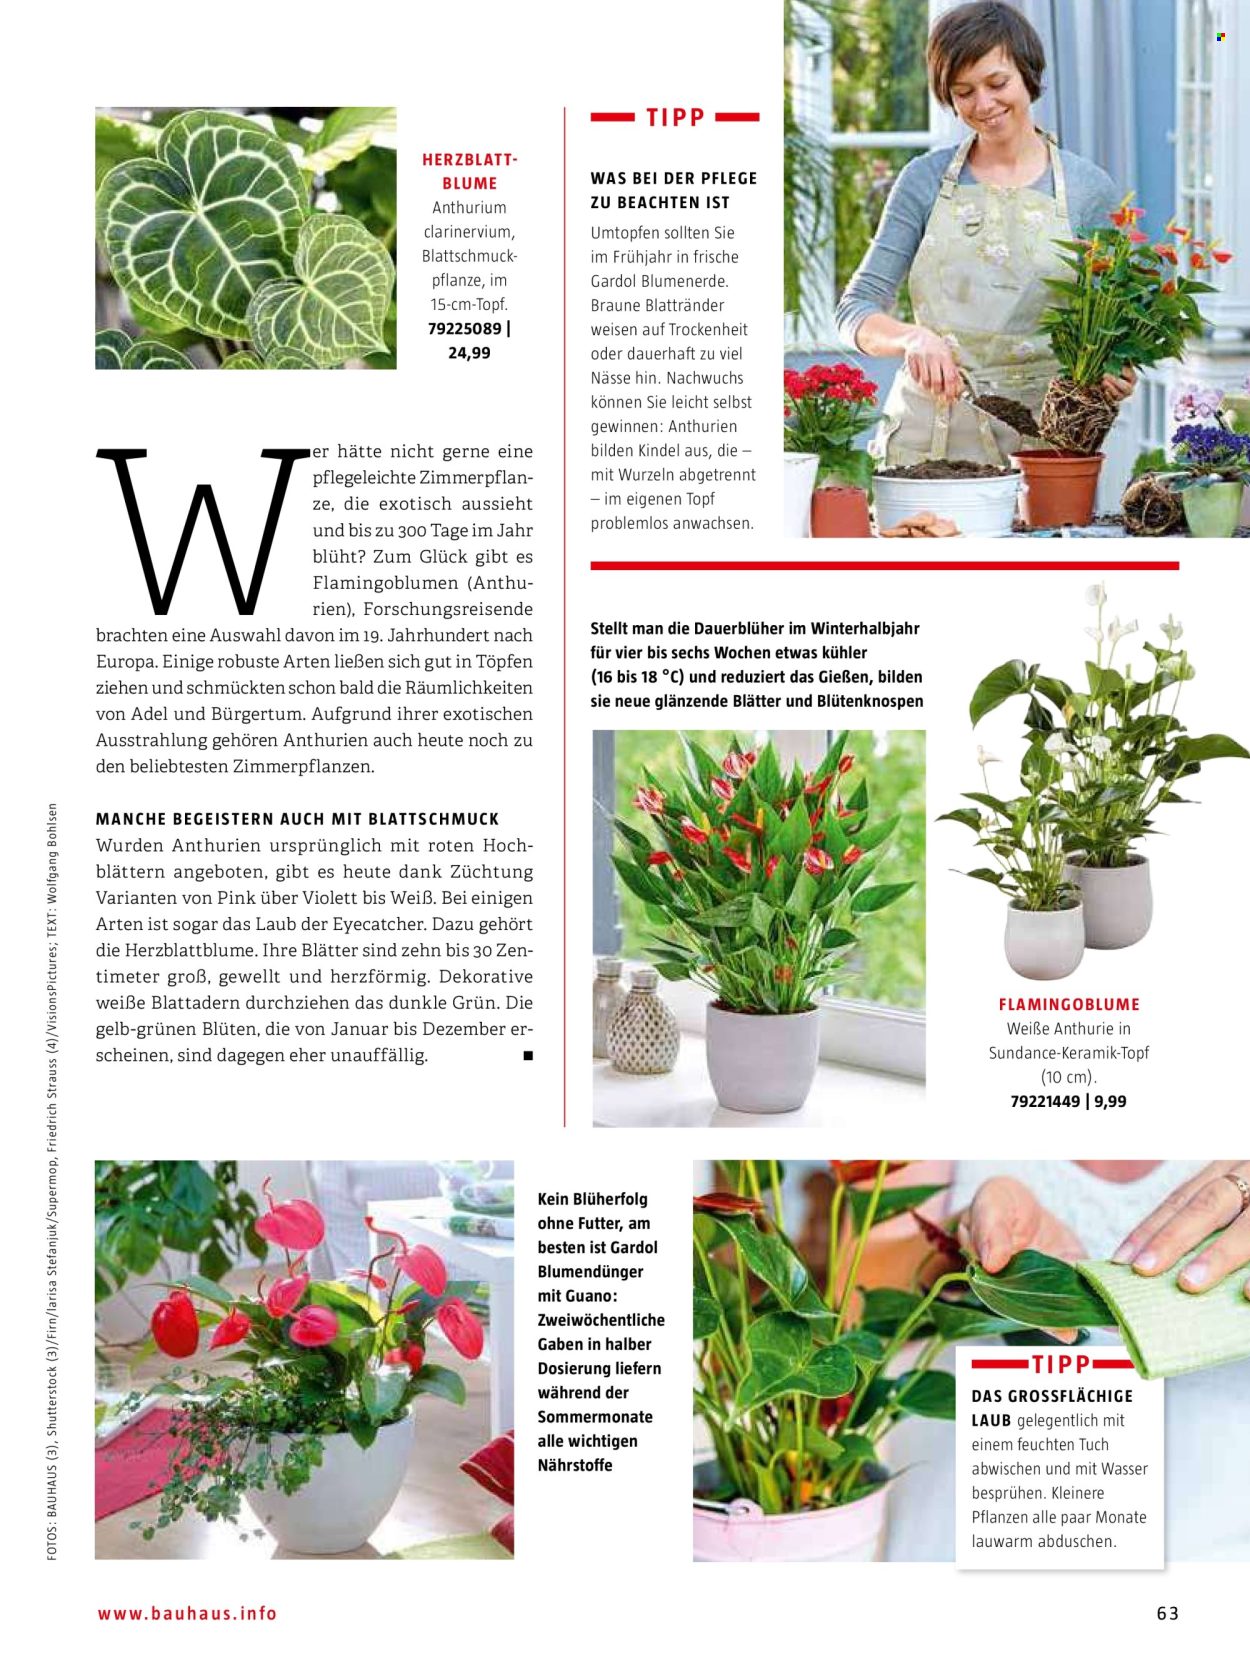 thumbnail - Prospekte Bauhaus - Produkte in Aktion - Blumenerde, Blumenstrauß, Anthurium, Drinnen-Pflanze, Blumendünger, Erde. Seite 63.